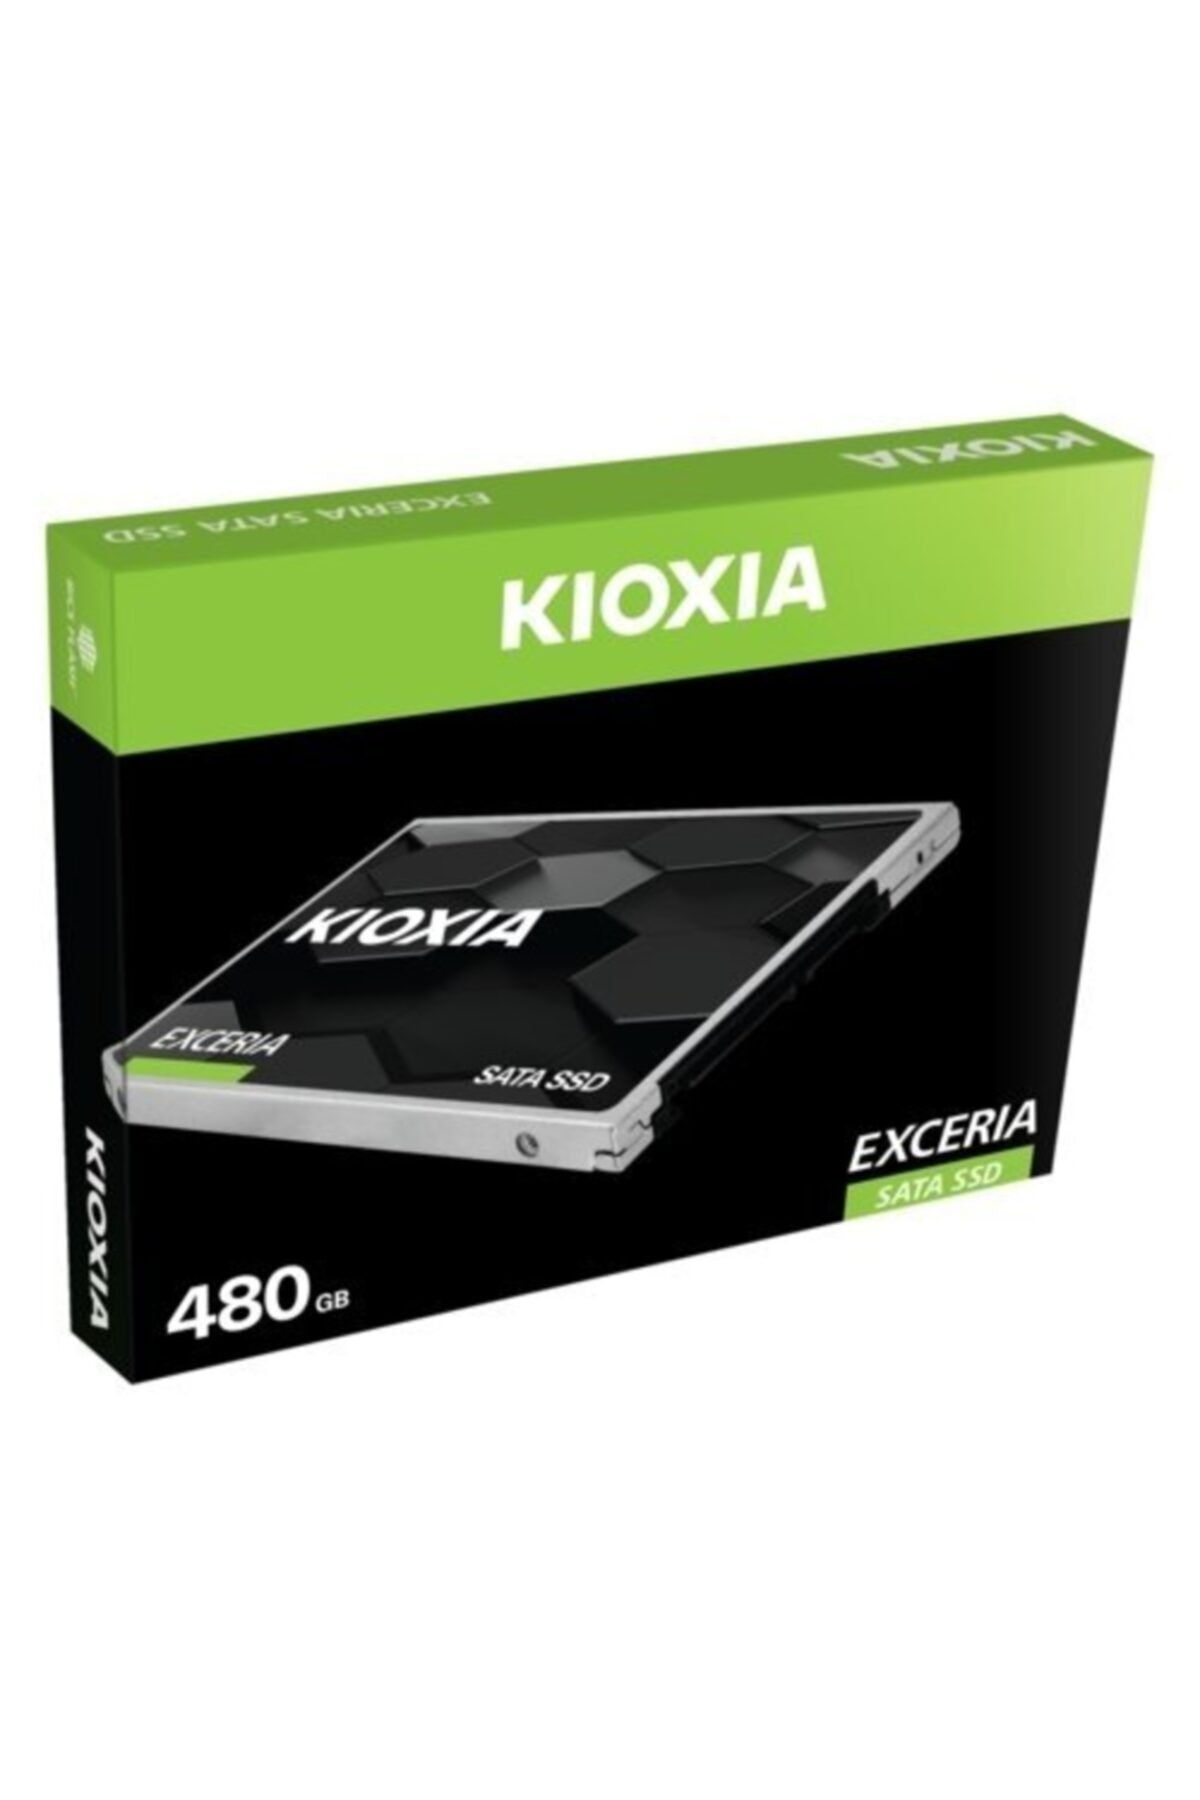 Kioxia Exceria 480gb Ssd Disk Ltc10z480gg8